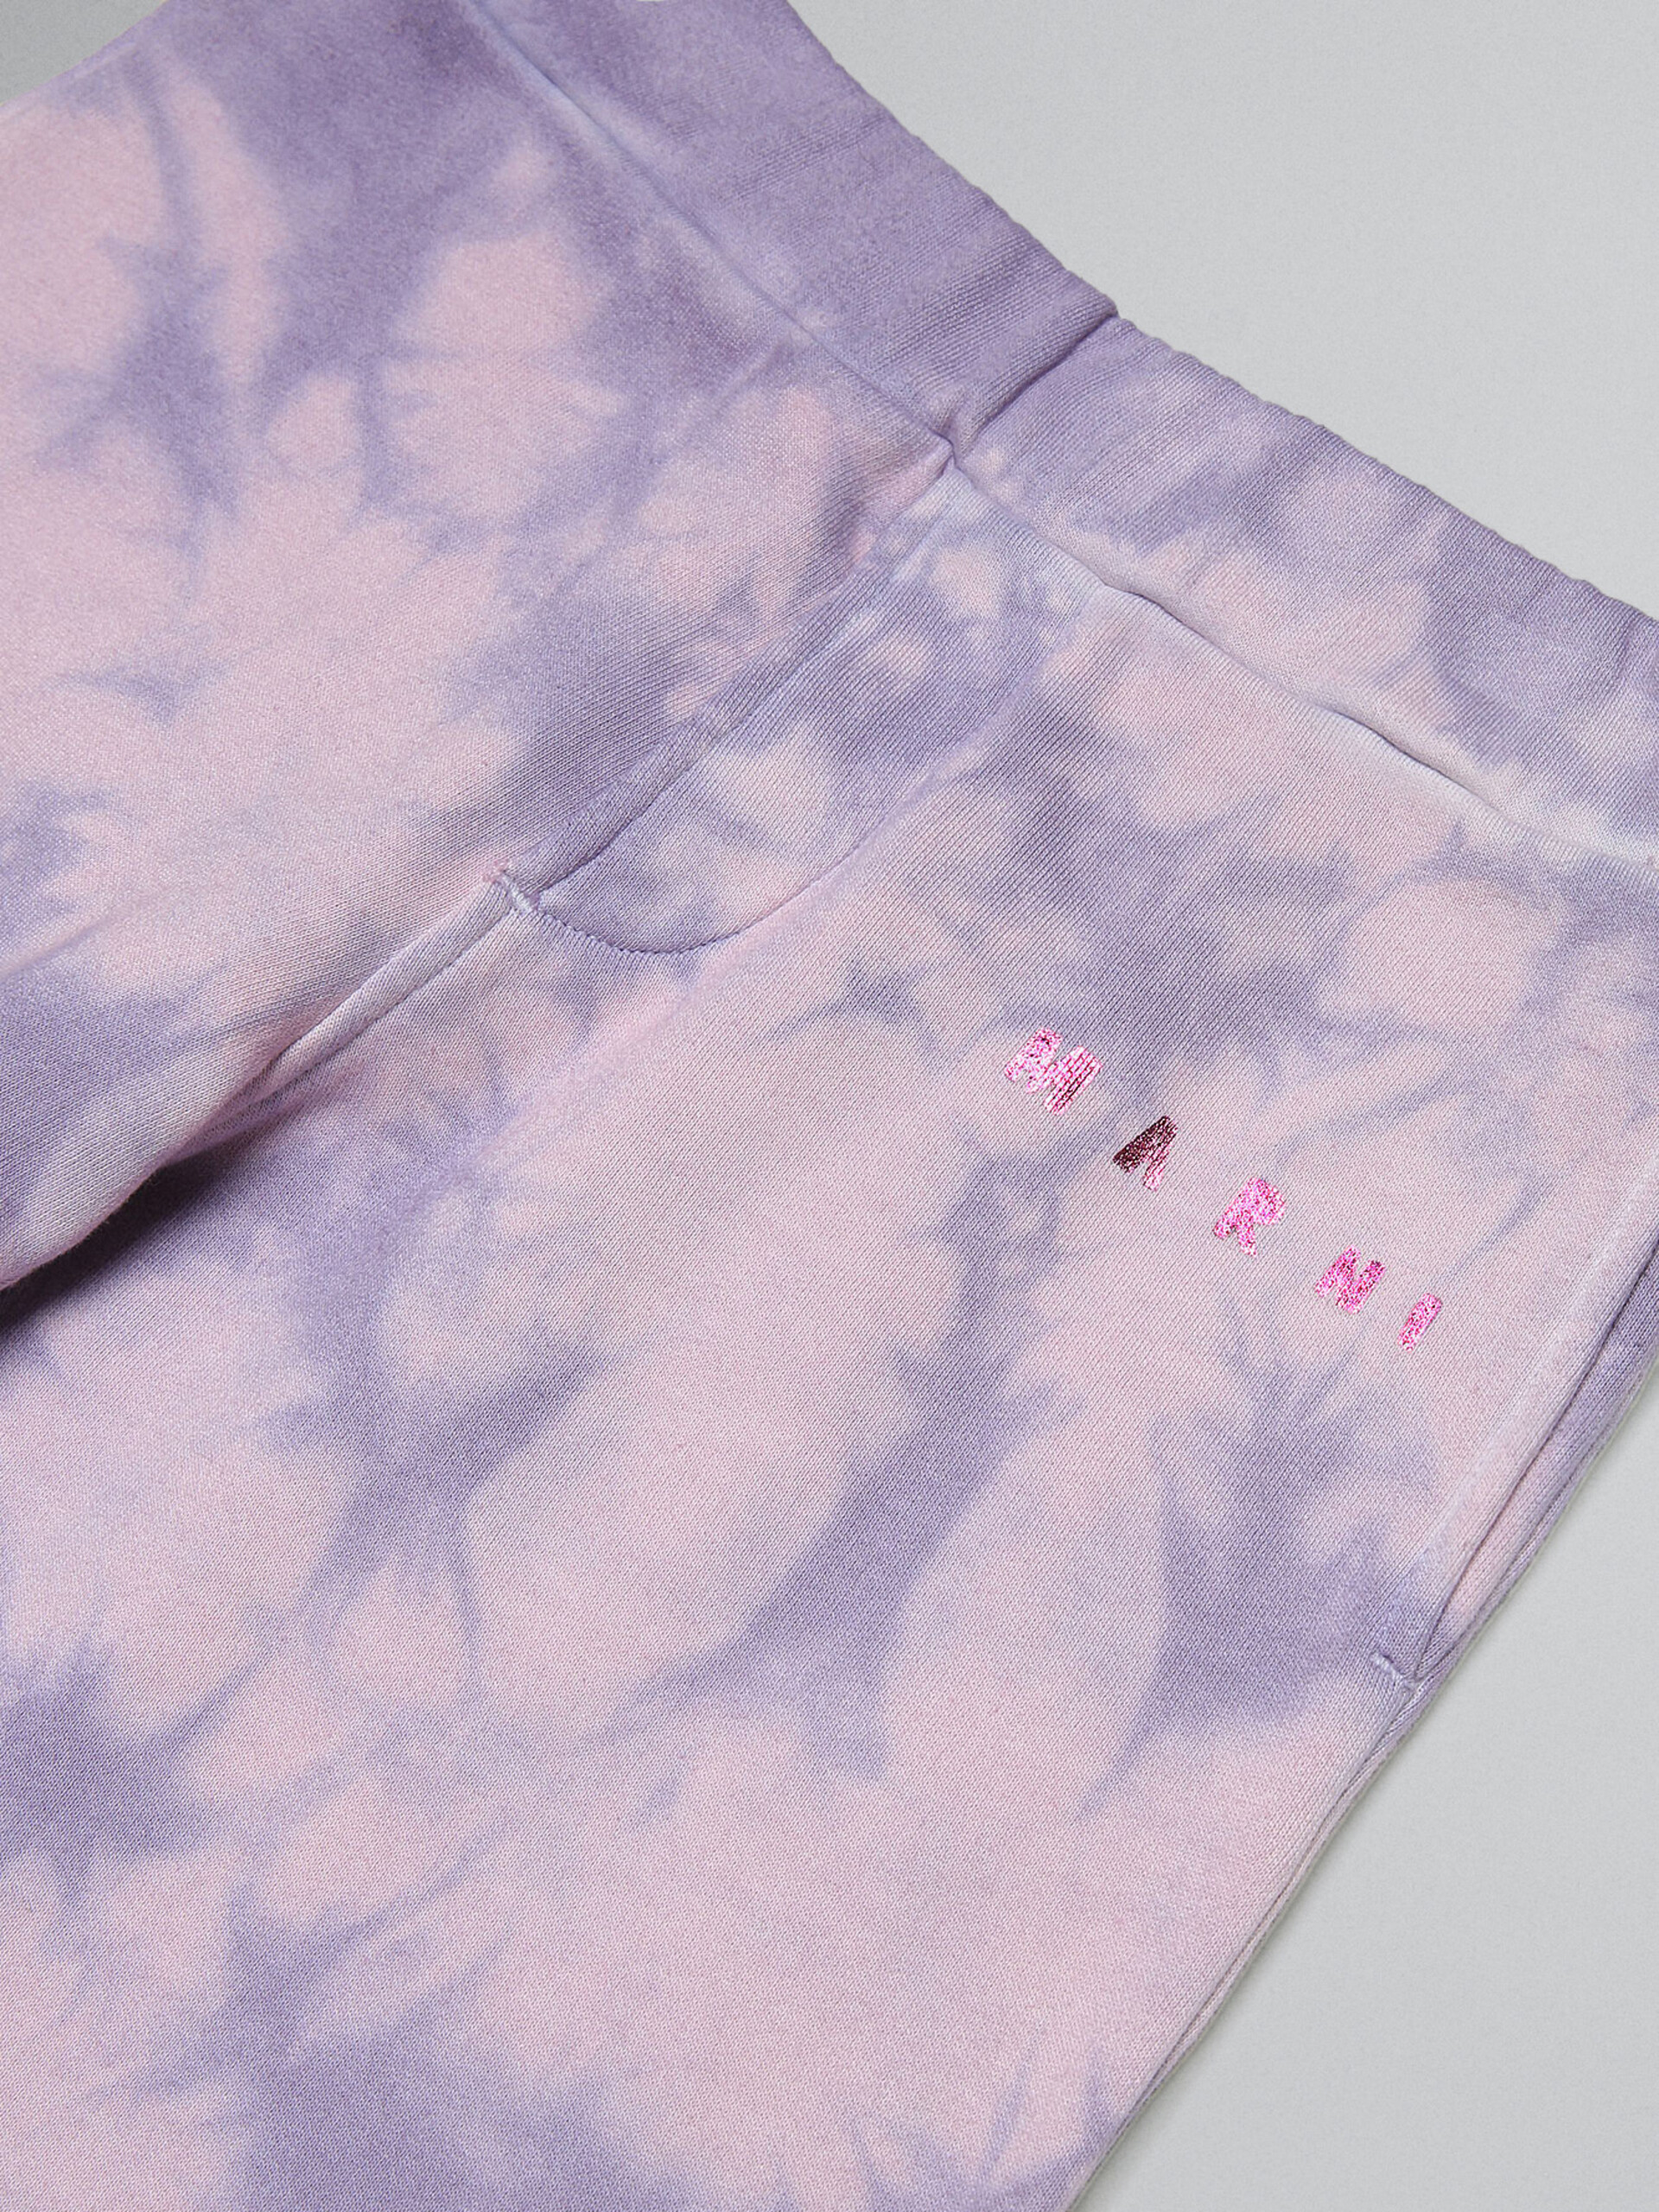 Lavender tie-dye track pants with metallic logo prints - Pants - Image 3